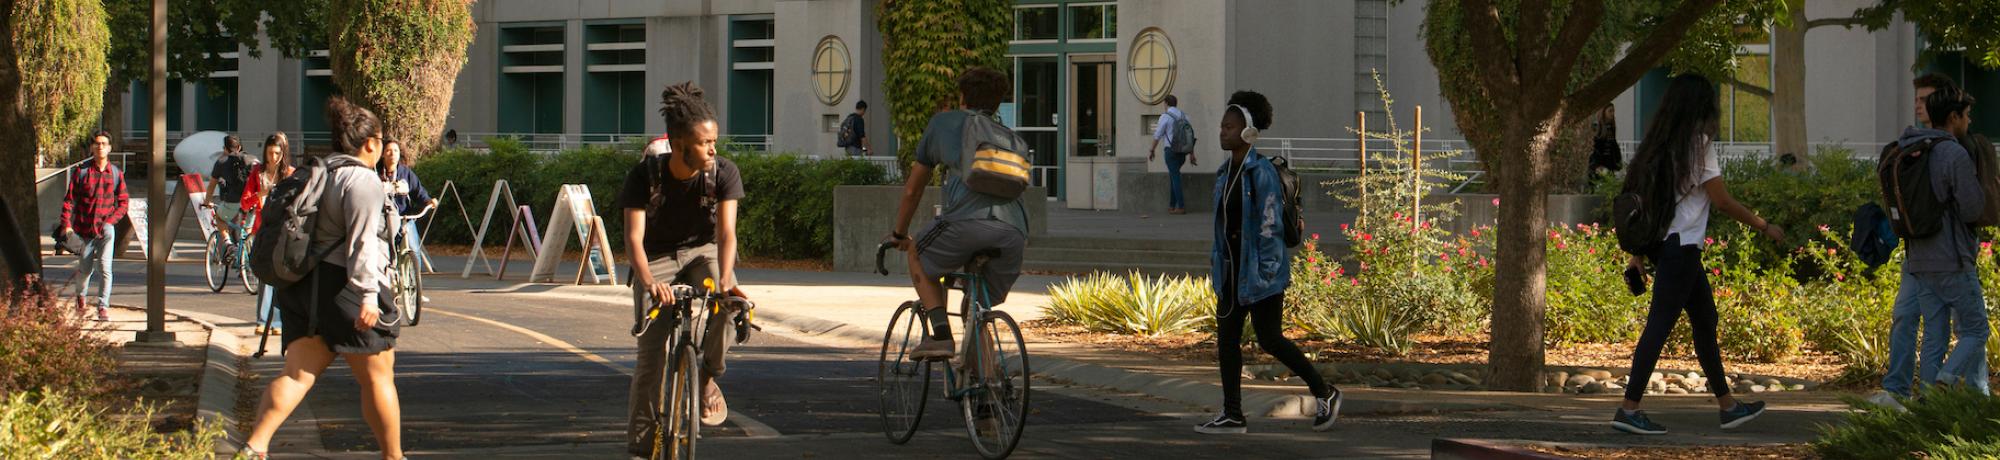 Students at UC Davis